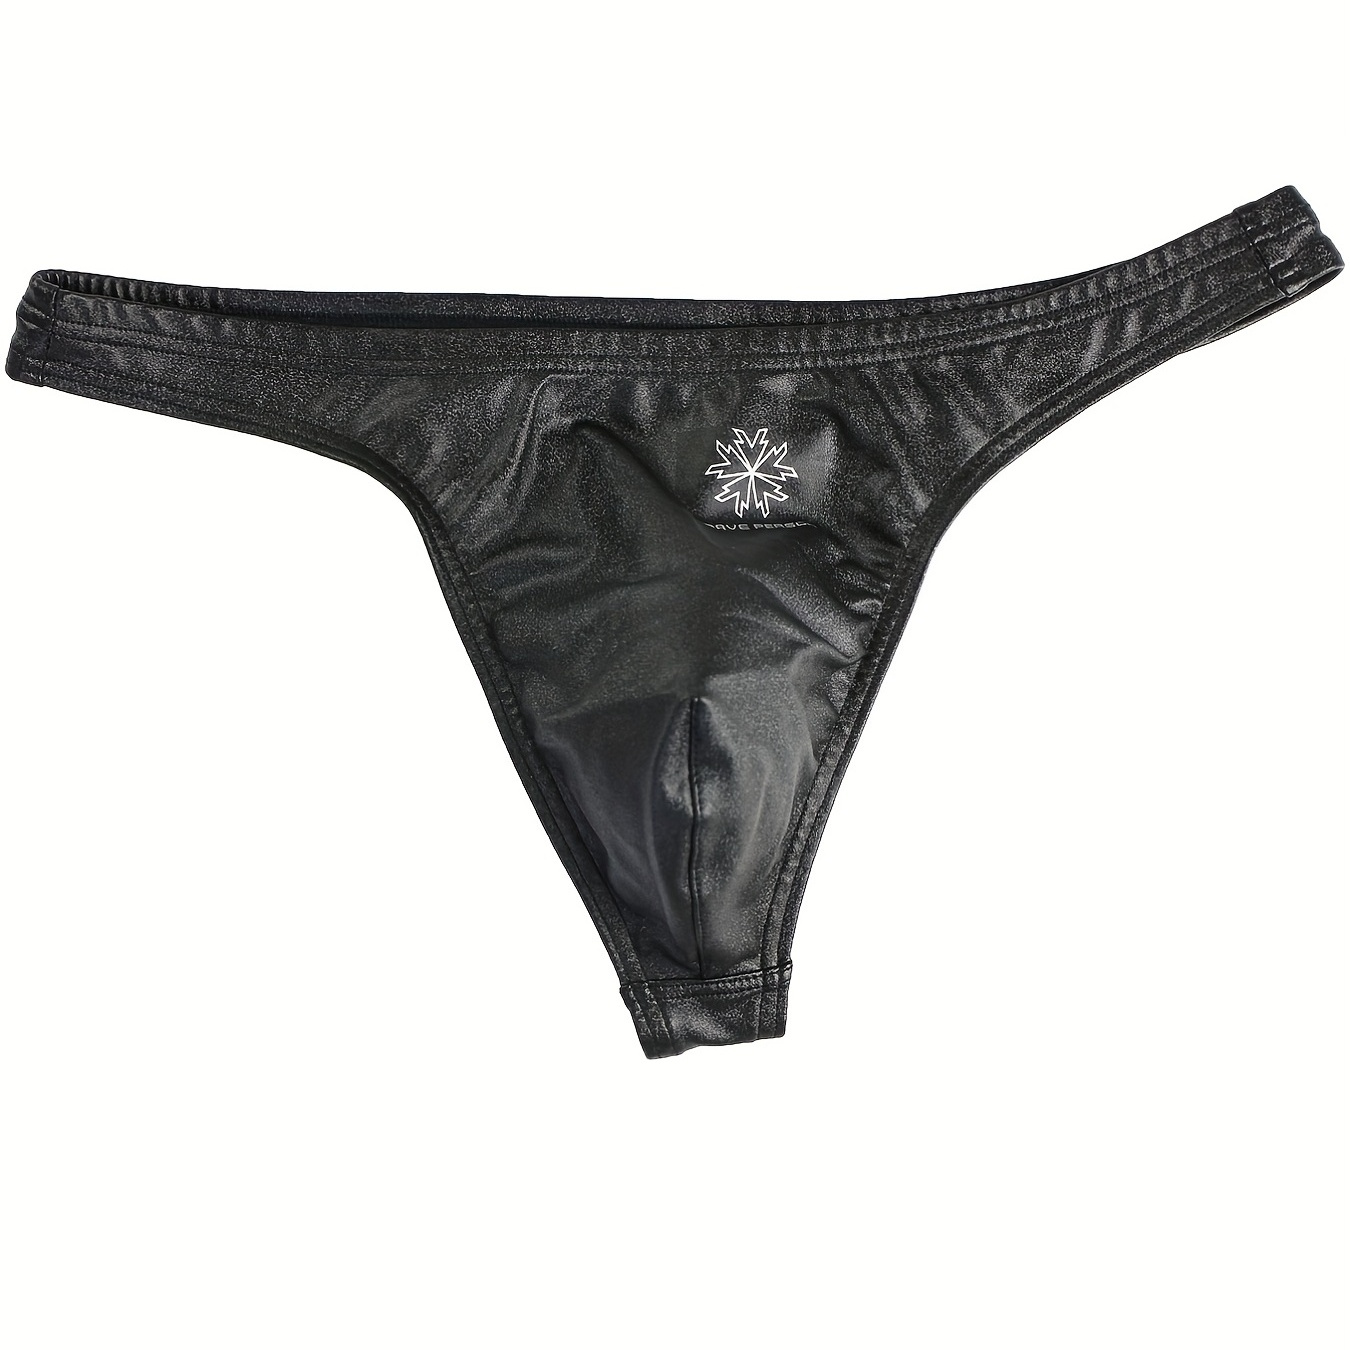 Hmwy-mens Faux Leather Jockstrap Underwear Backless Briefs Thongs